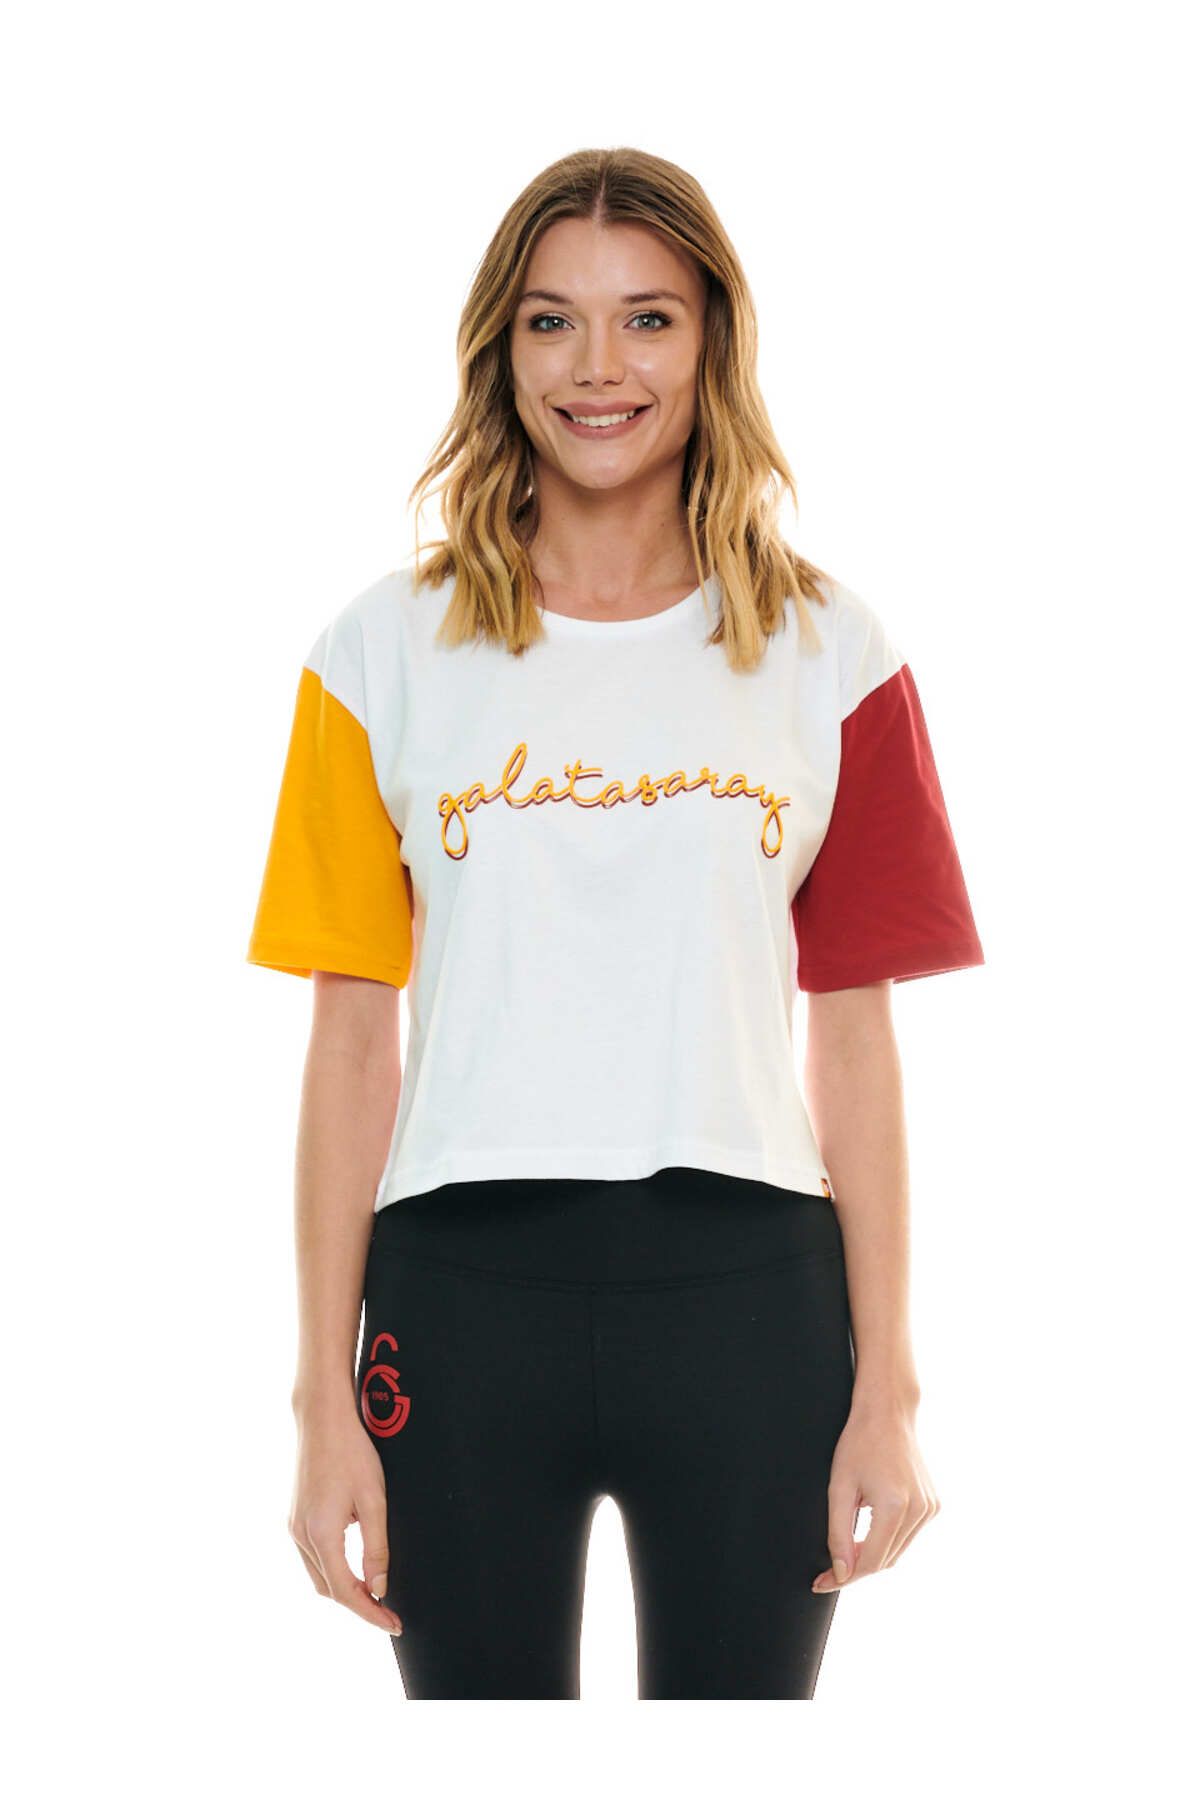 Galatasaray Kadın T-shirt K201170